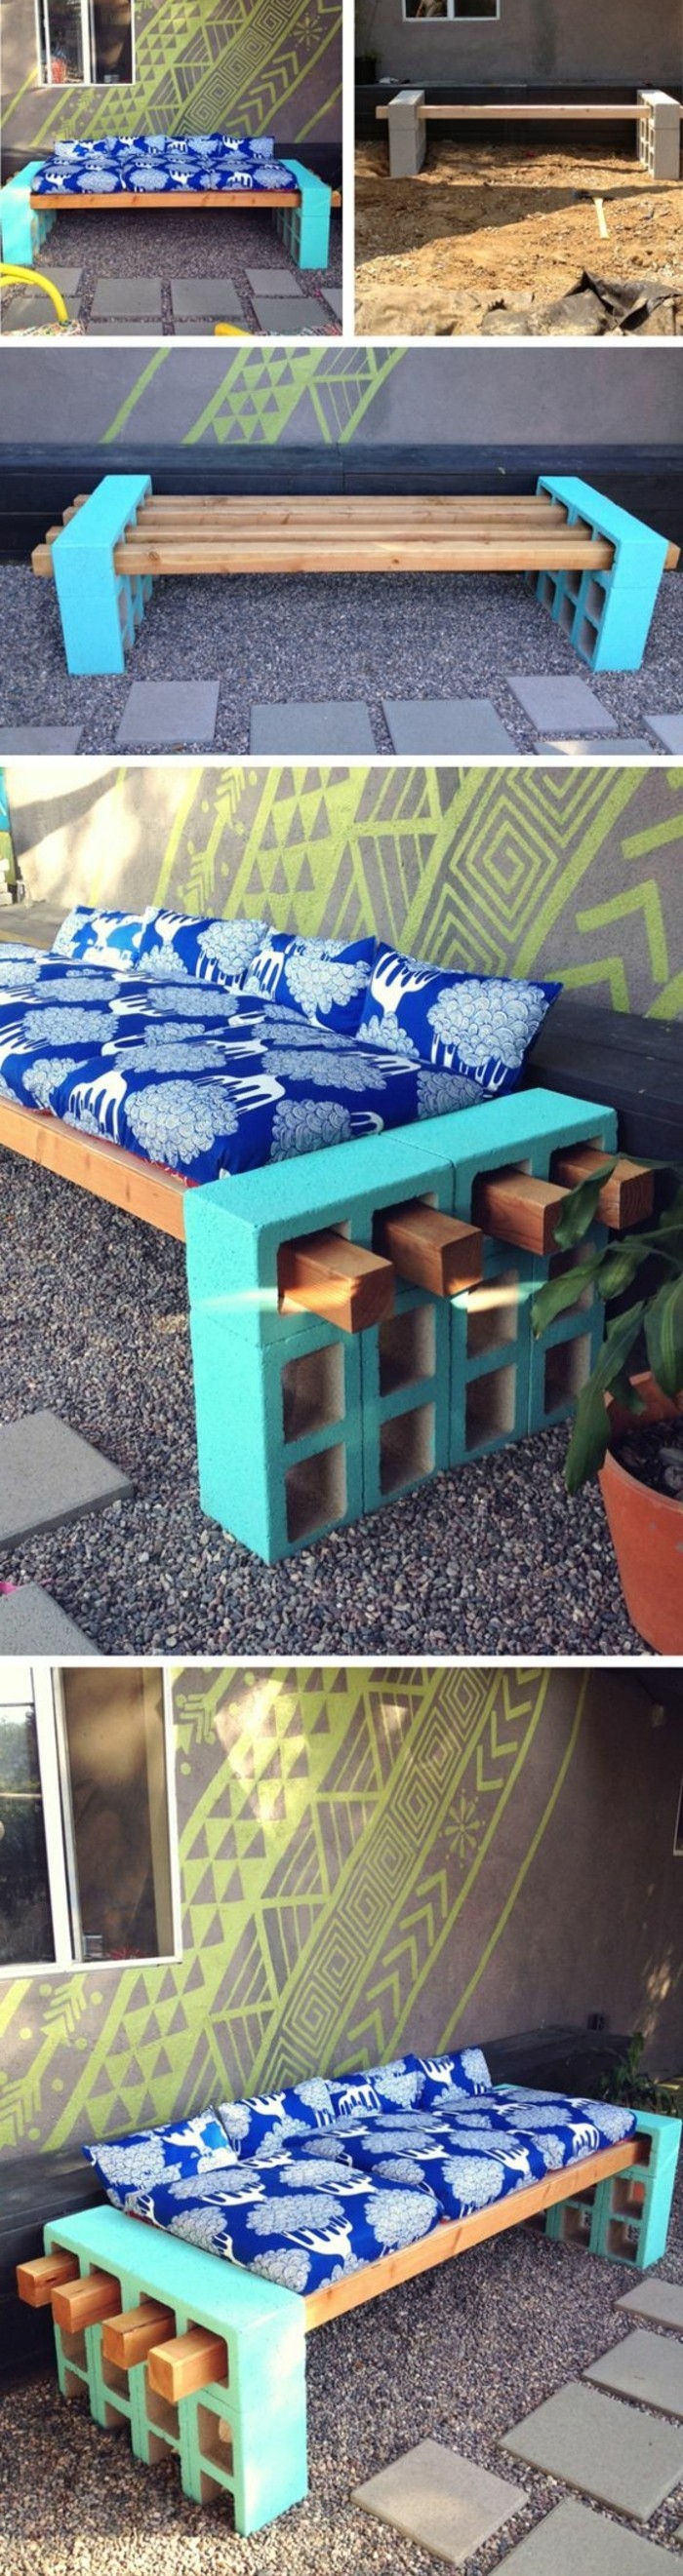 DIY-Moebel-wohnideen-seoeber tekevä sininen sohva-from-puusta